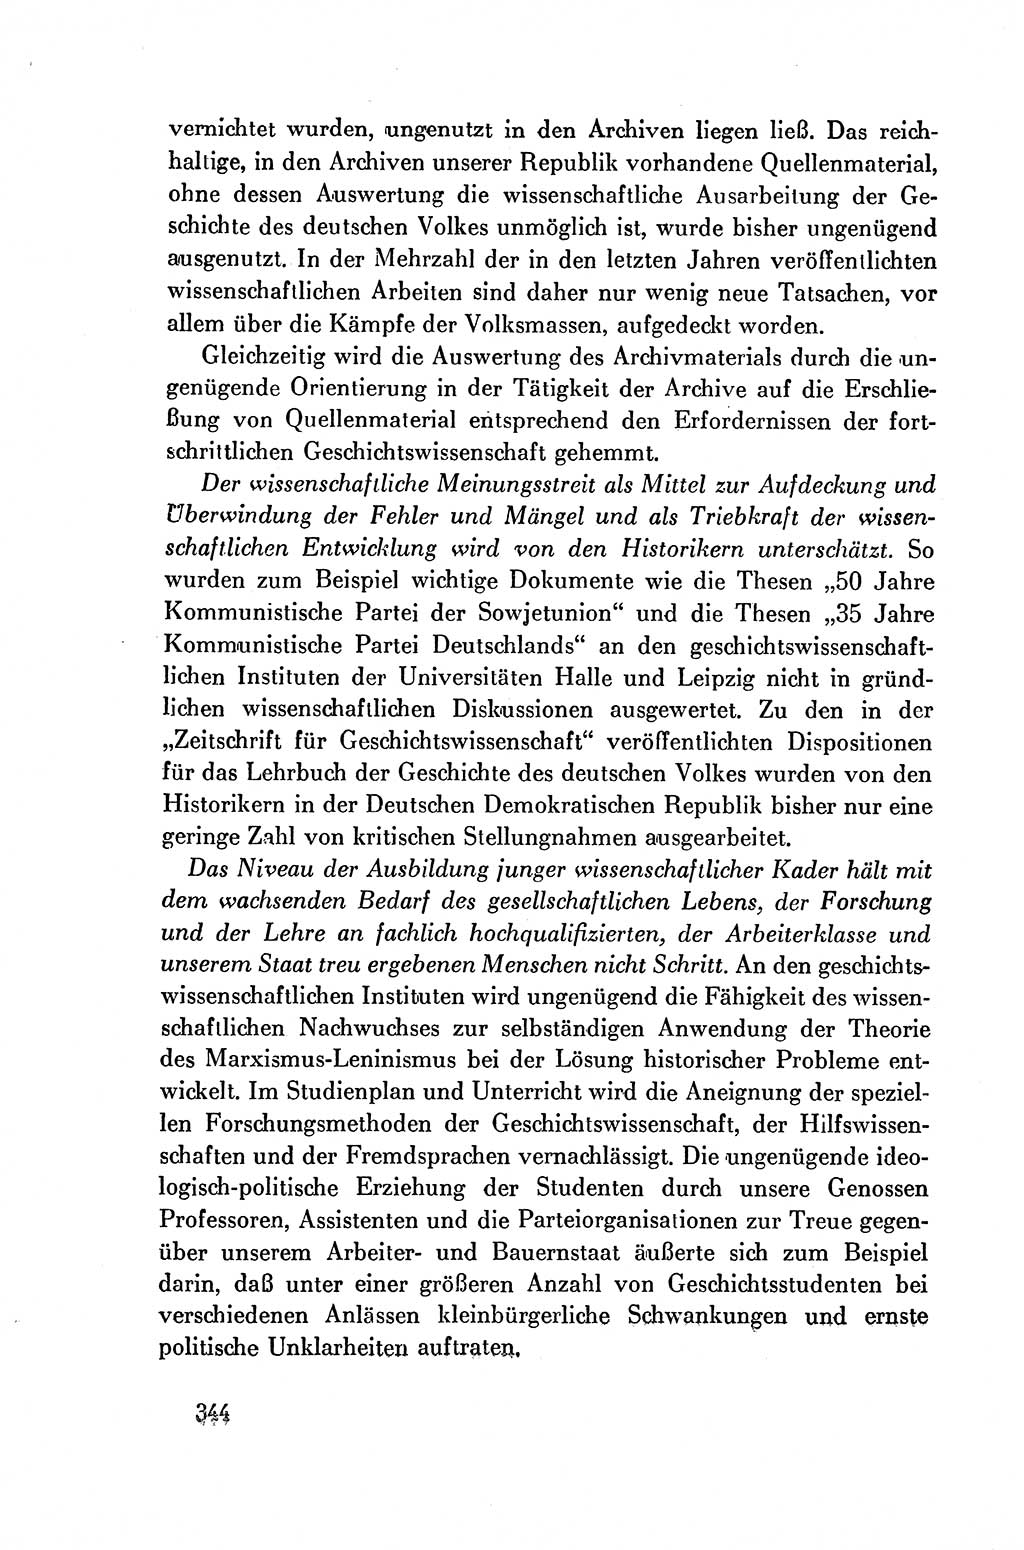 Dokumente der Sozialistischen Einheitspartei Deutschlands (SED) [Deutsche Demokratische Republik (DDR)] 1954-1955, Seite 344 (Dok. SED DDR 1954-1955, S. 344)